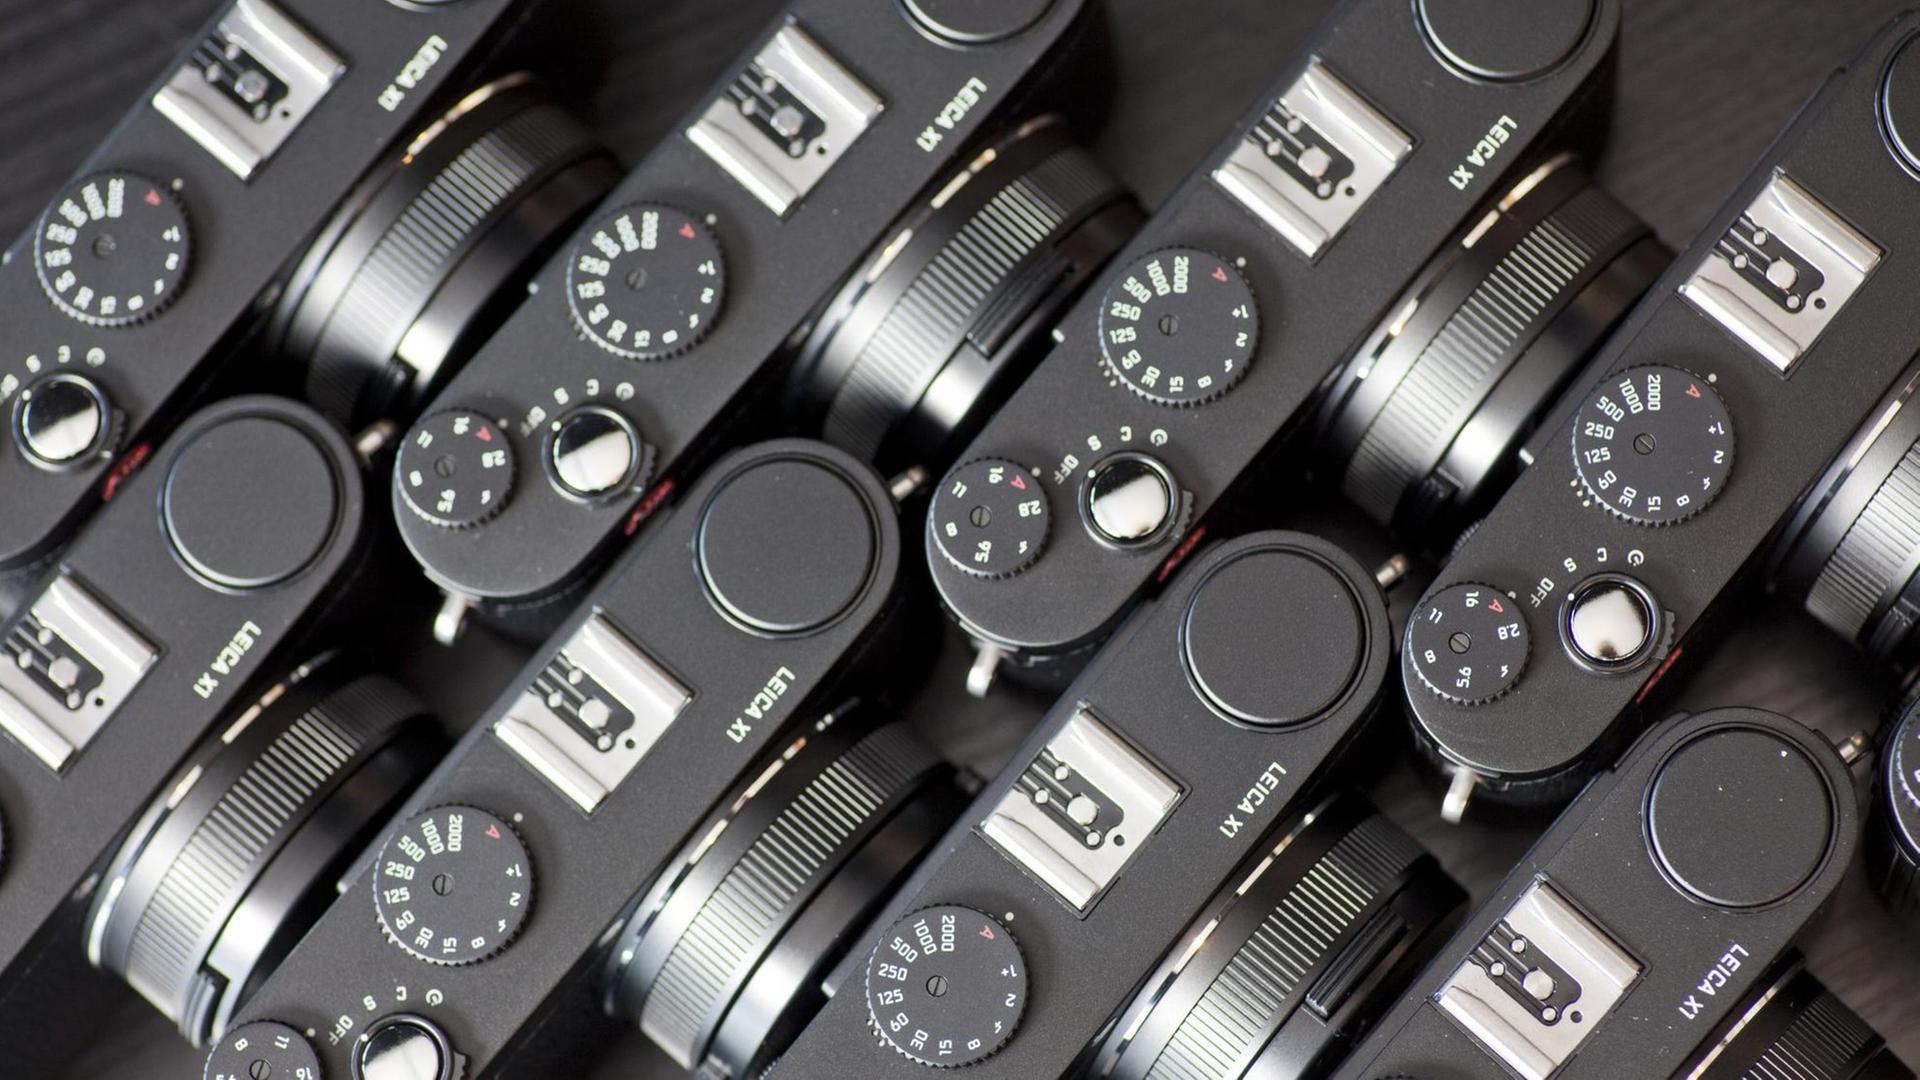 Das Foto zeiigt mehrere Leica Kameras von oben des Typs X1.